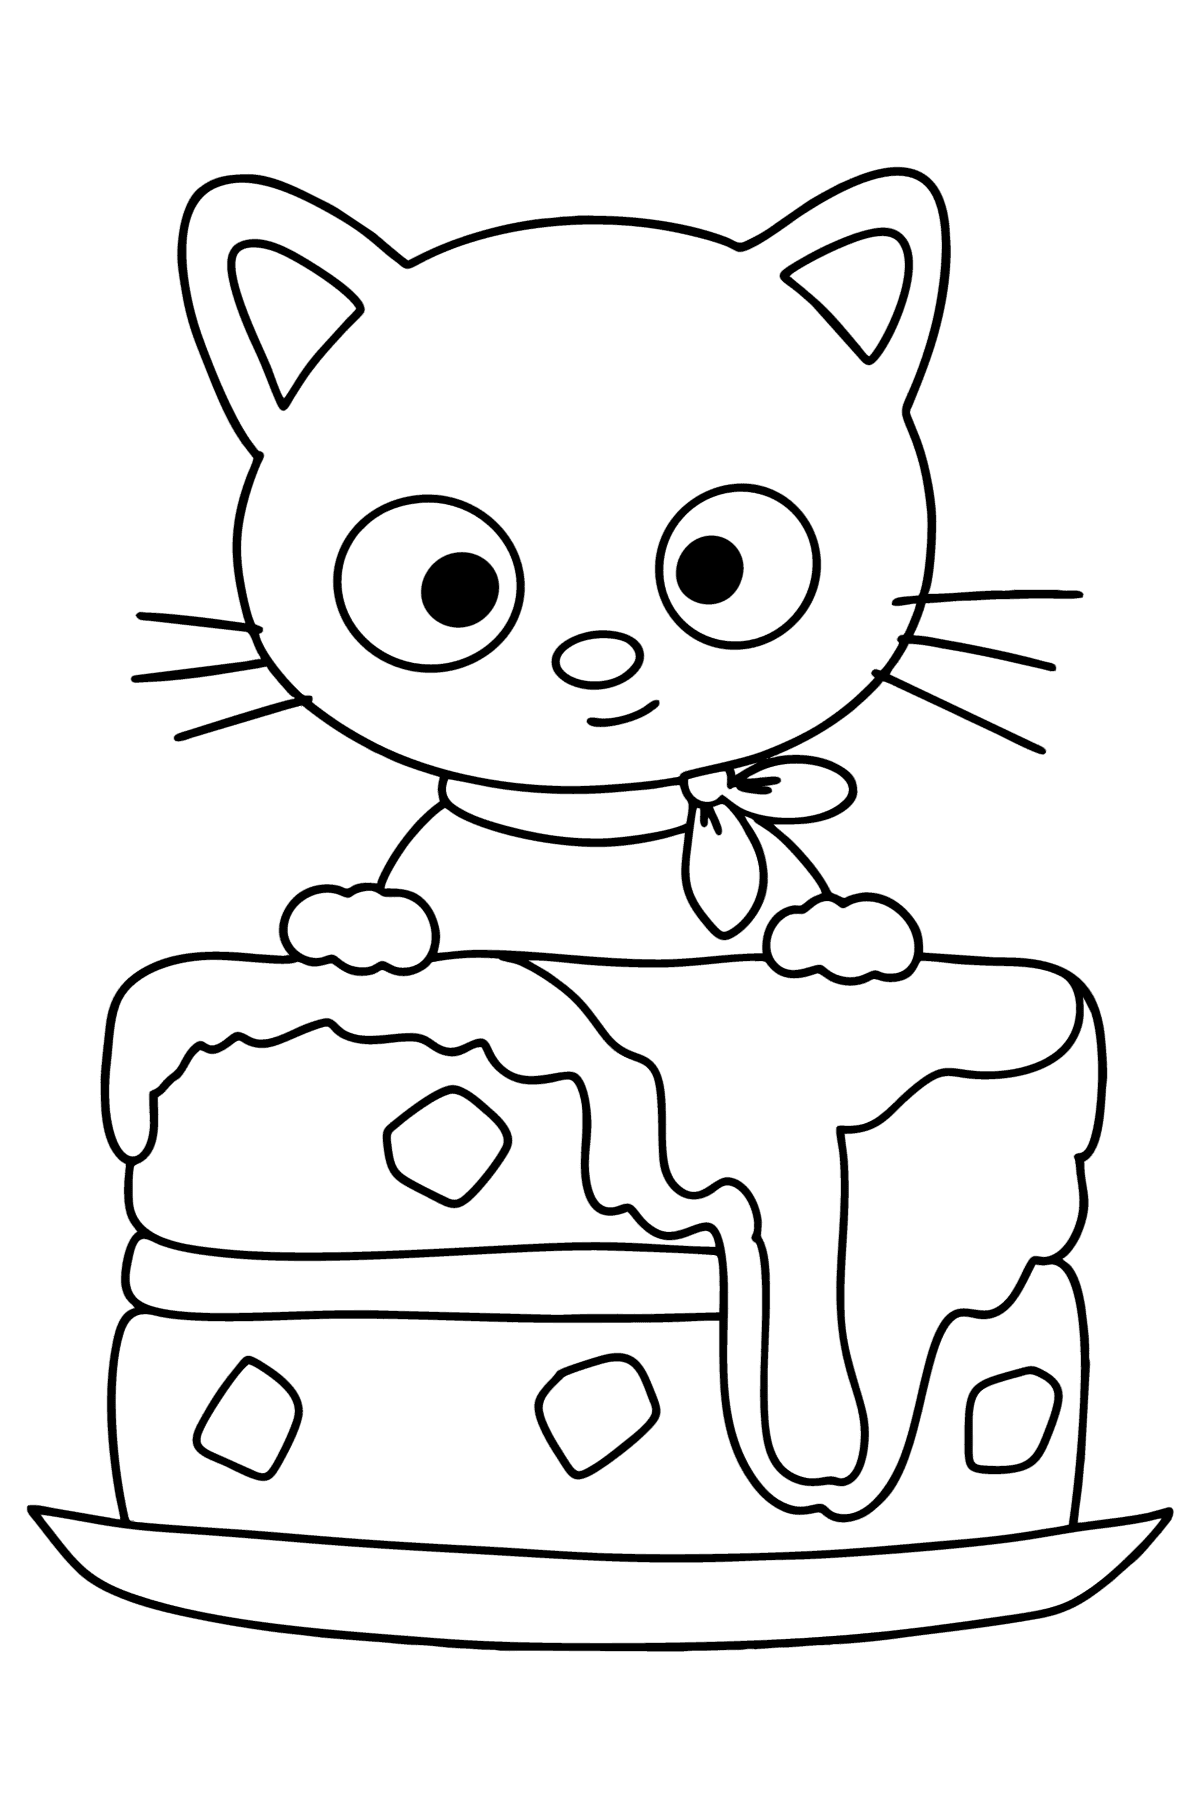 Ausmalbild Hello Kitty Chococat - Malvorlagen für Kinder